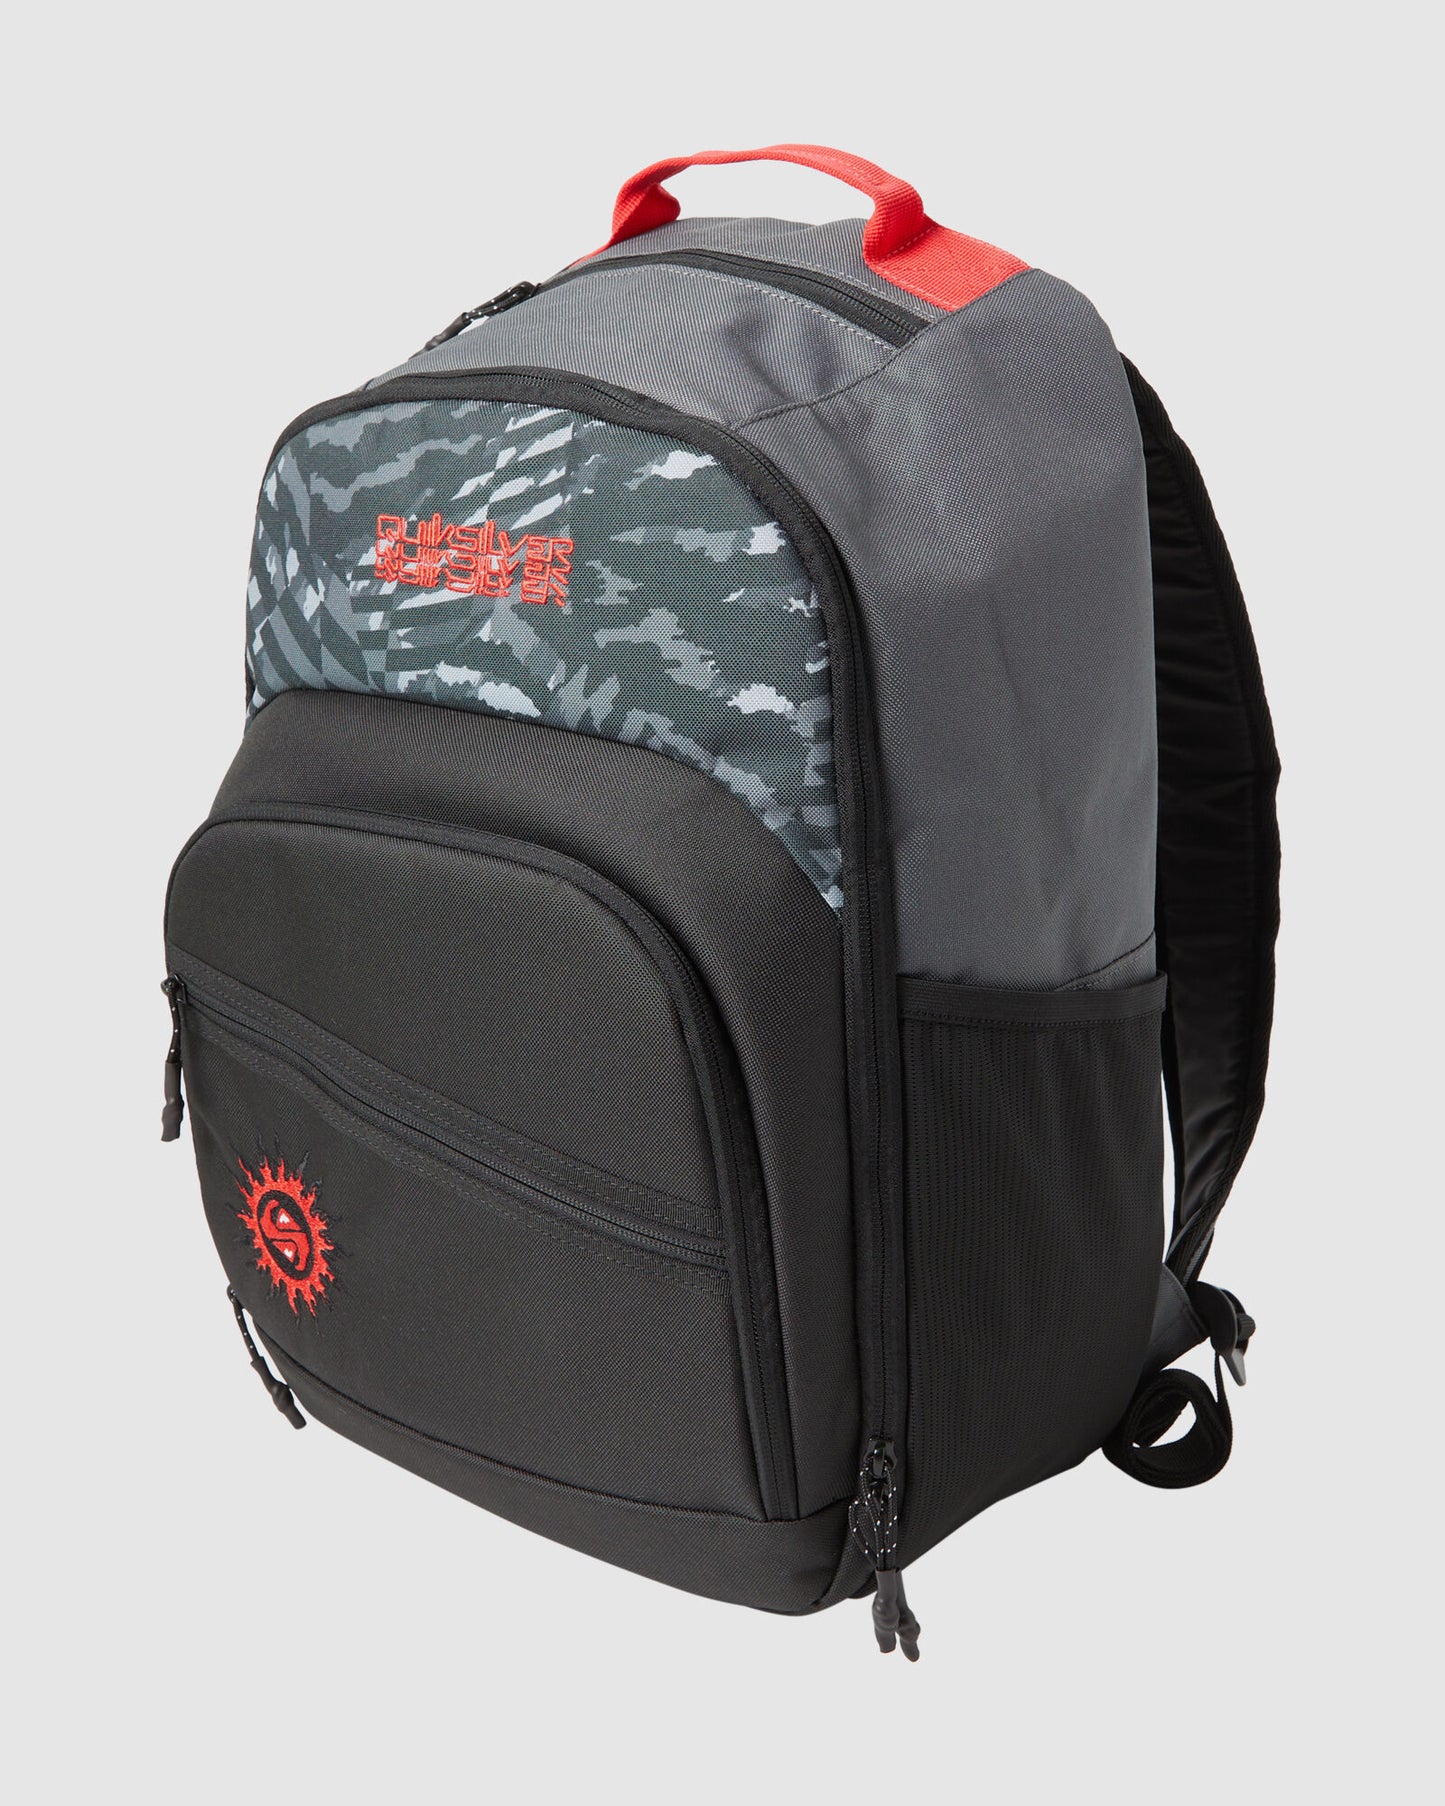 Quiksilver Schoolie Cooler Backpack